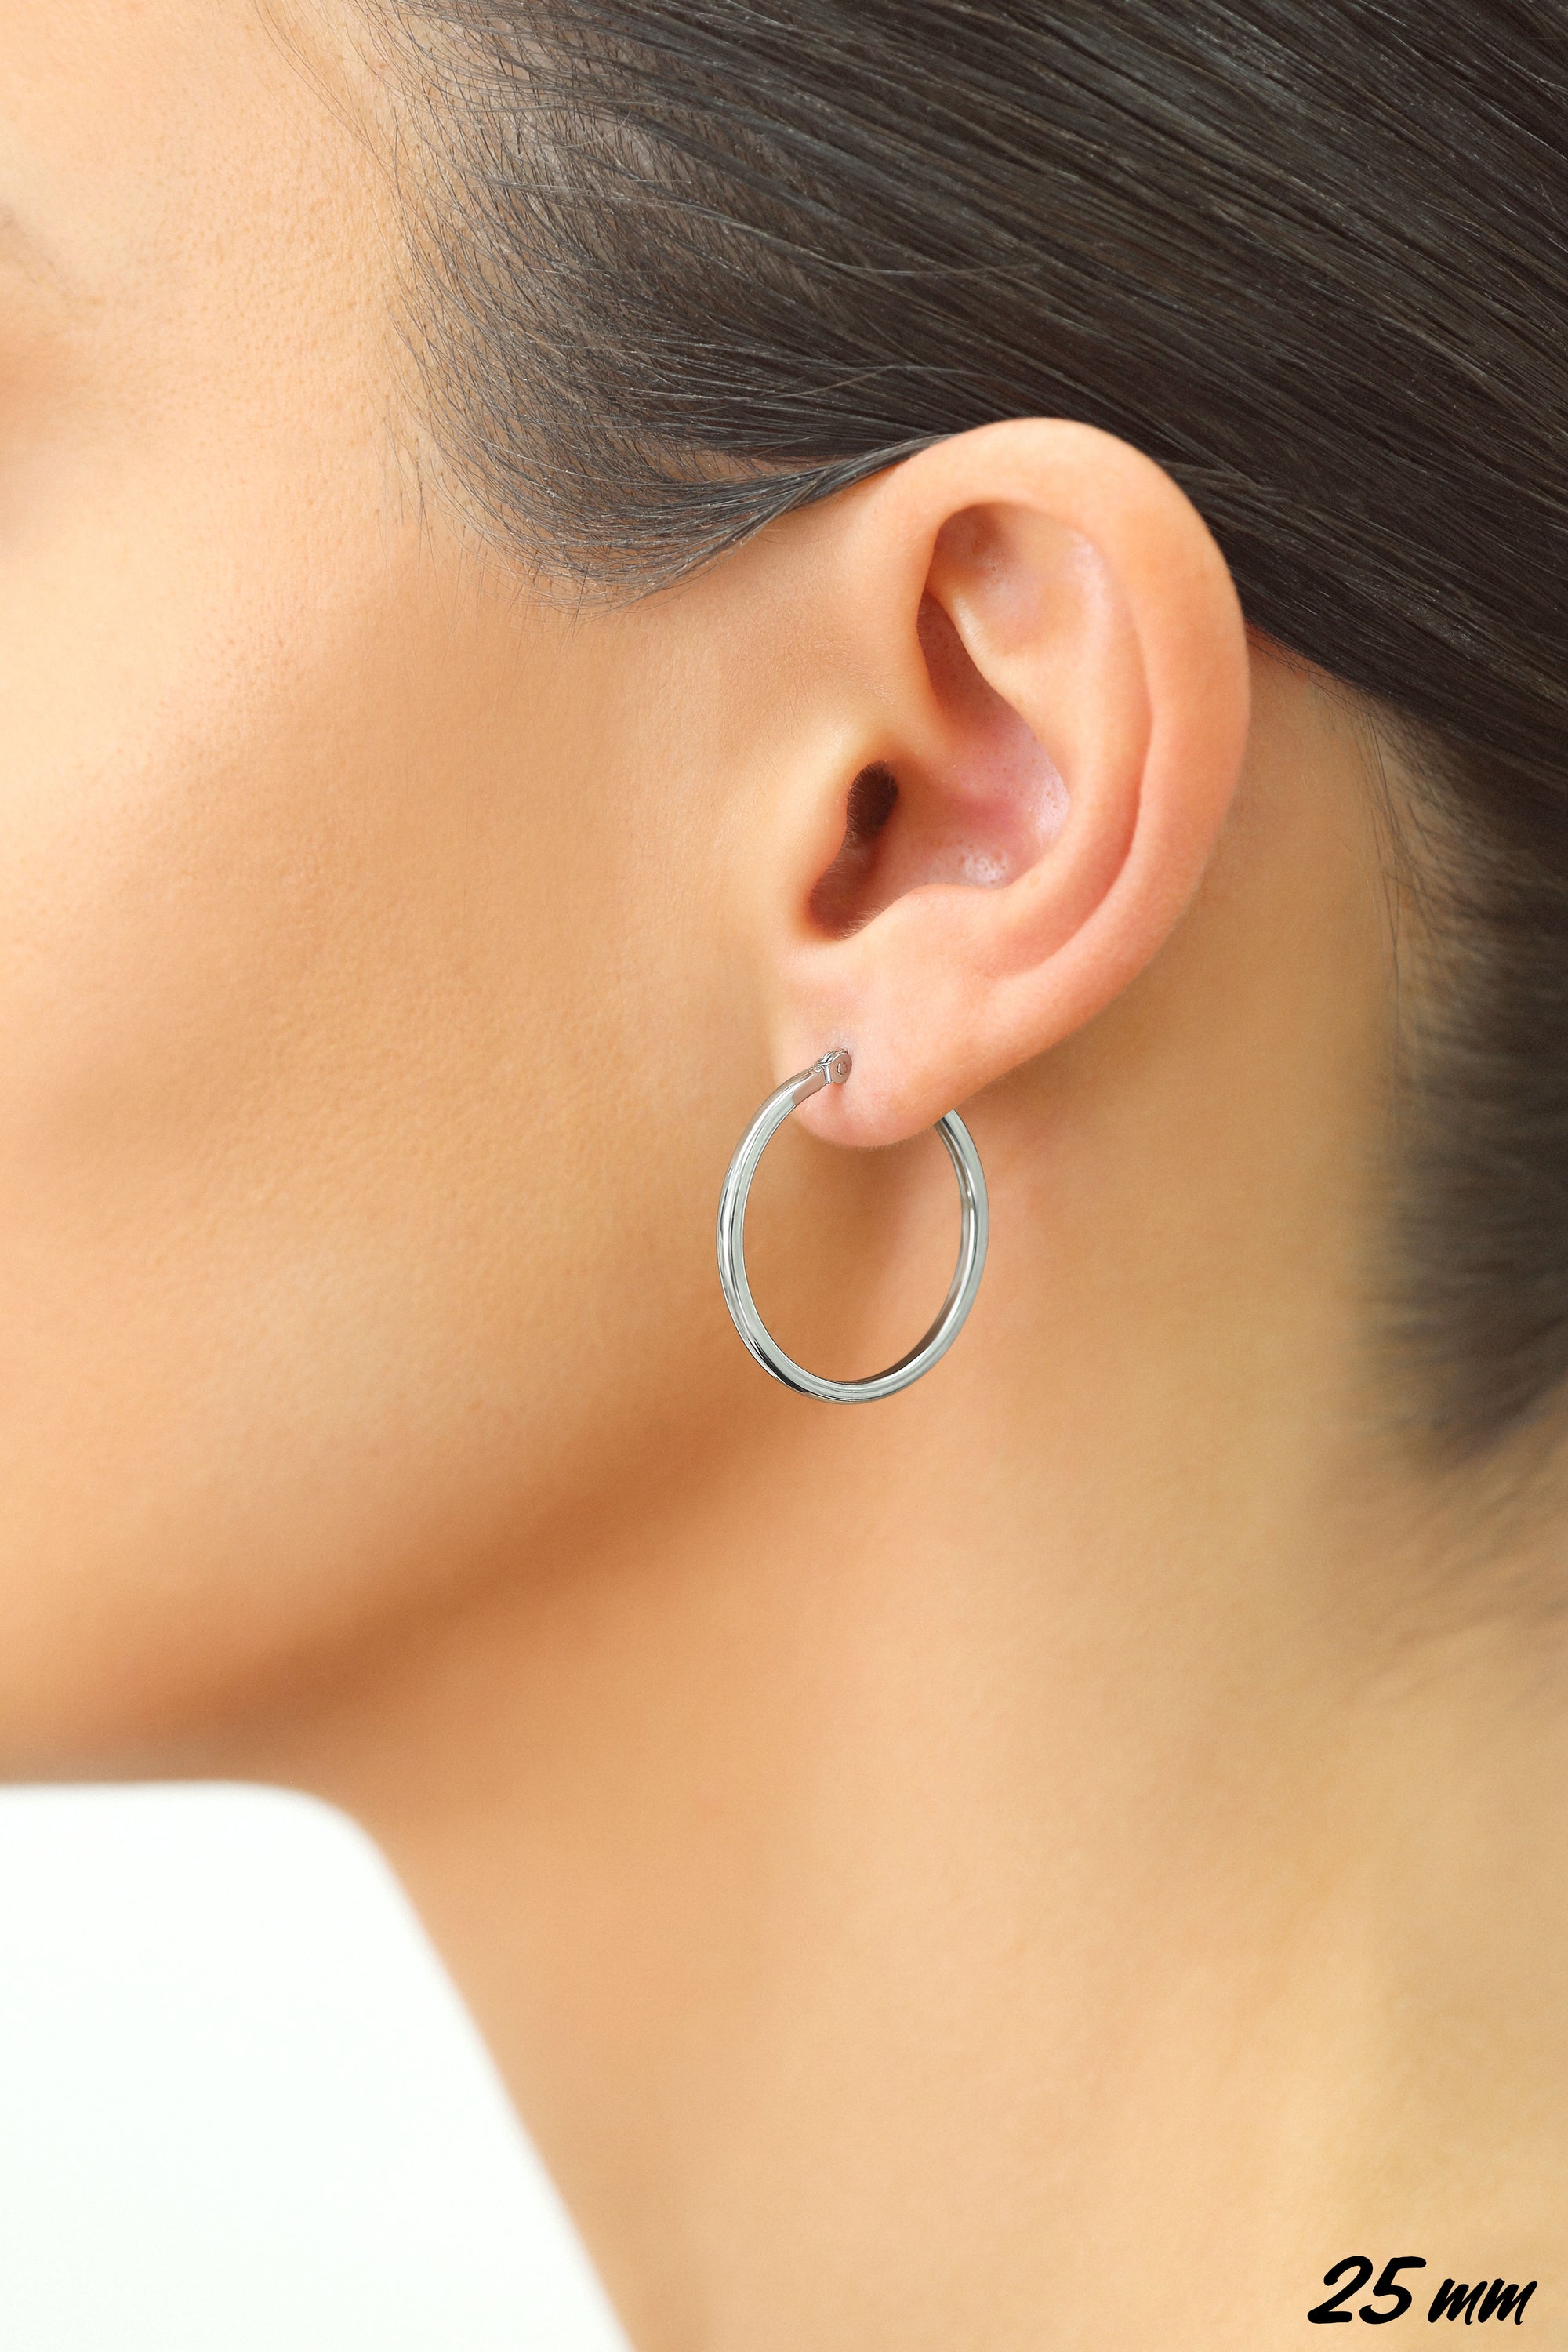 Square Tube Hoop Earrings, 1 inch in Sterling Silver